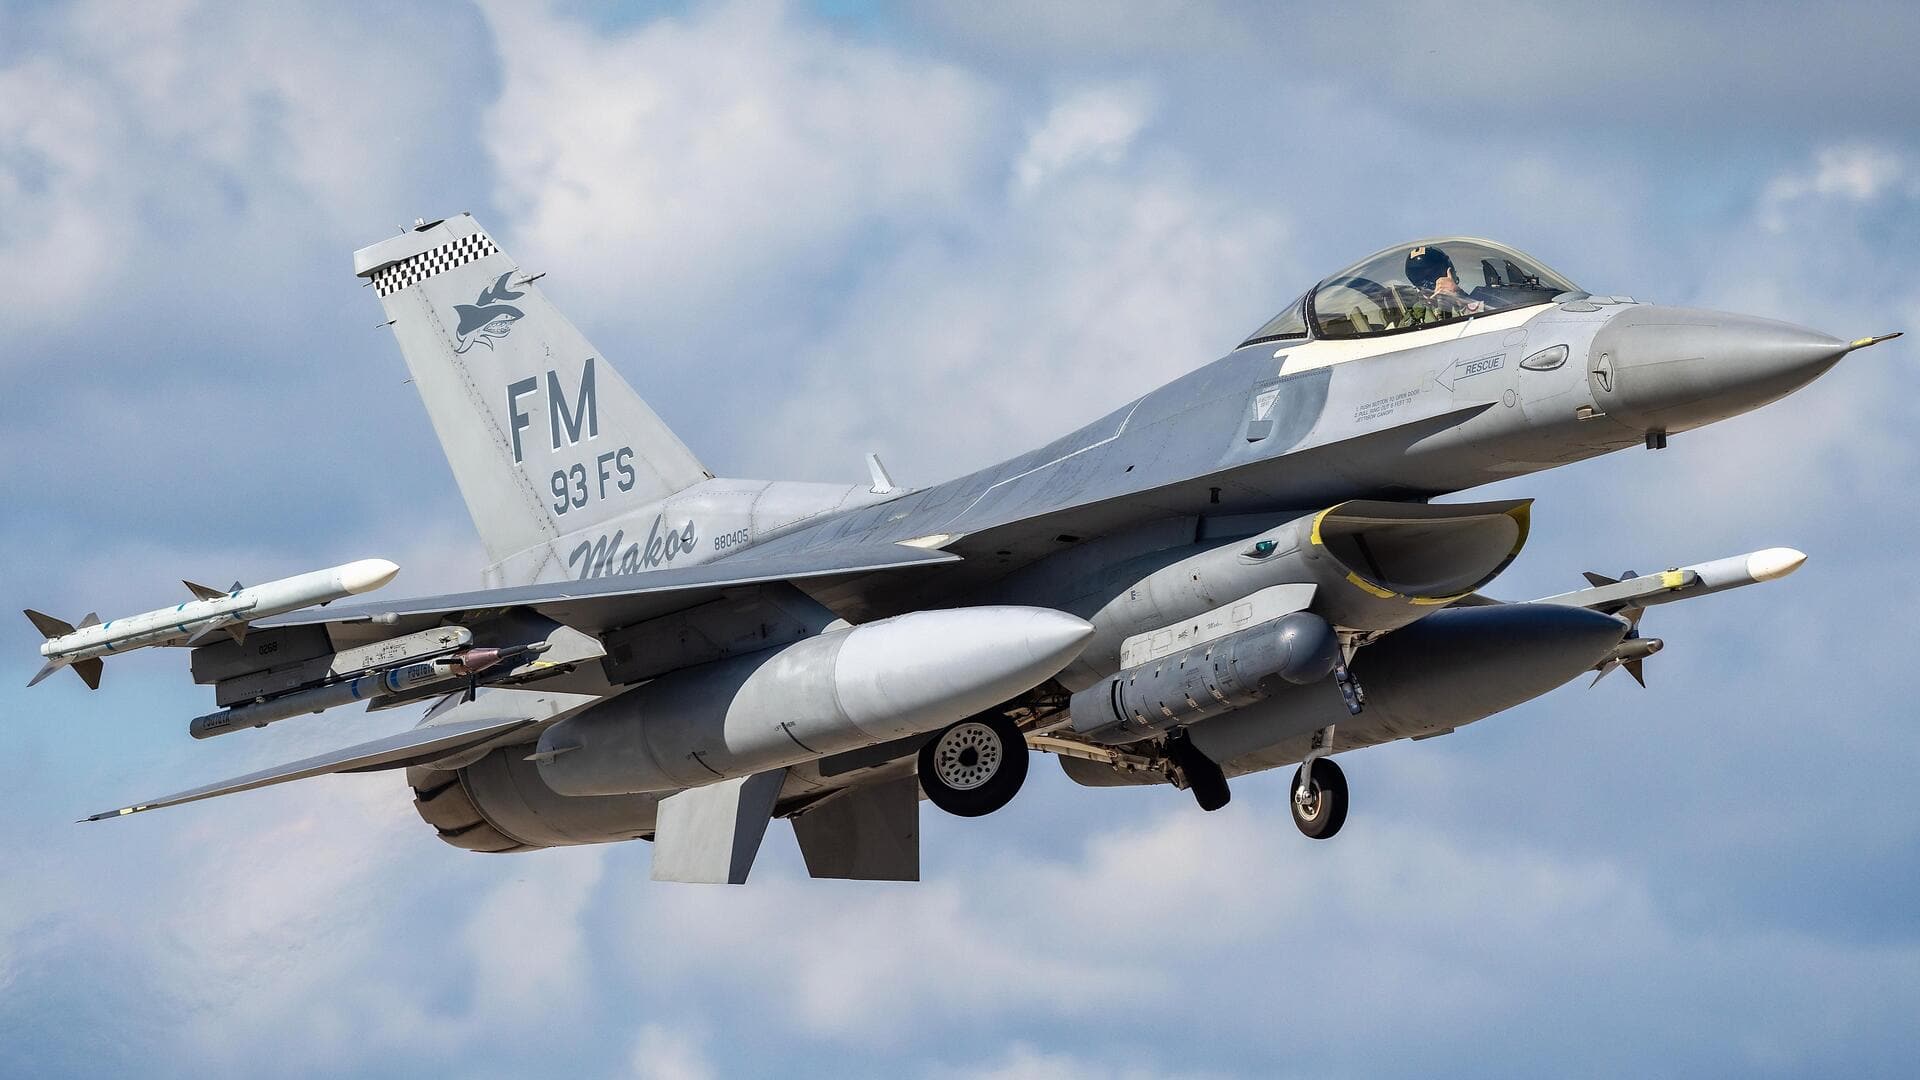 F-16 लड़ाकू विमान परमाणु हथियार ले जाने में सक्षम, यूक्रेन को देने पर बढ़ेगा संघर्ष- रूस